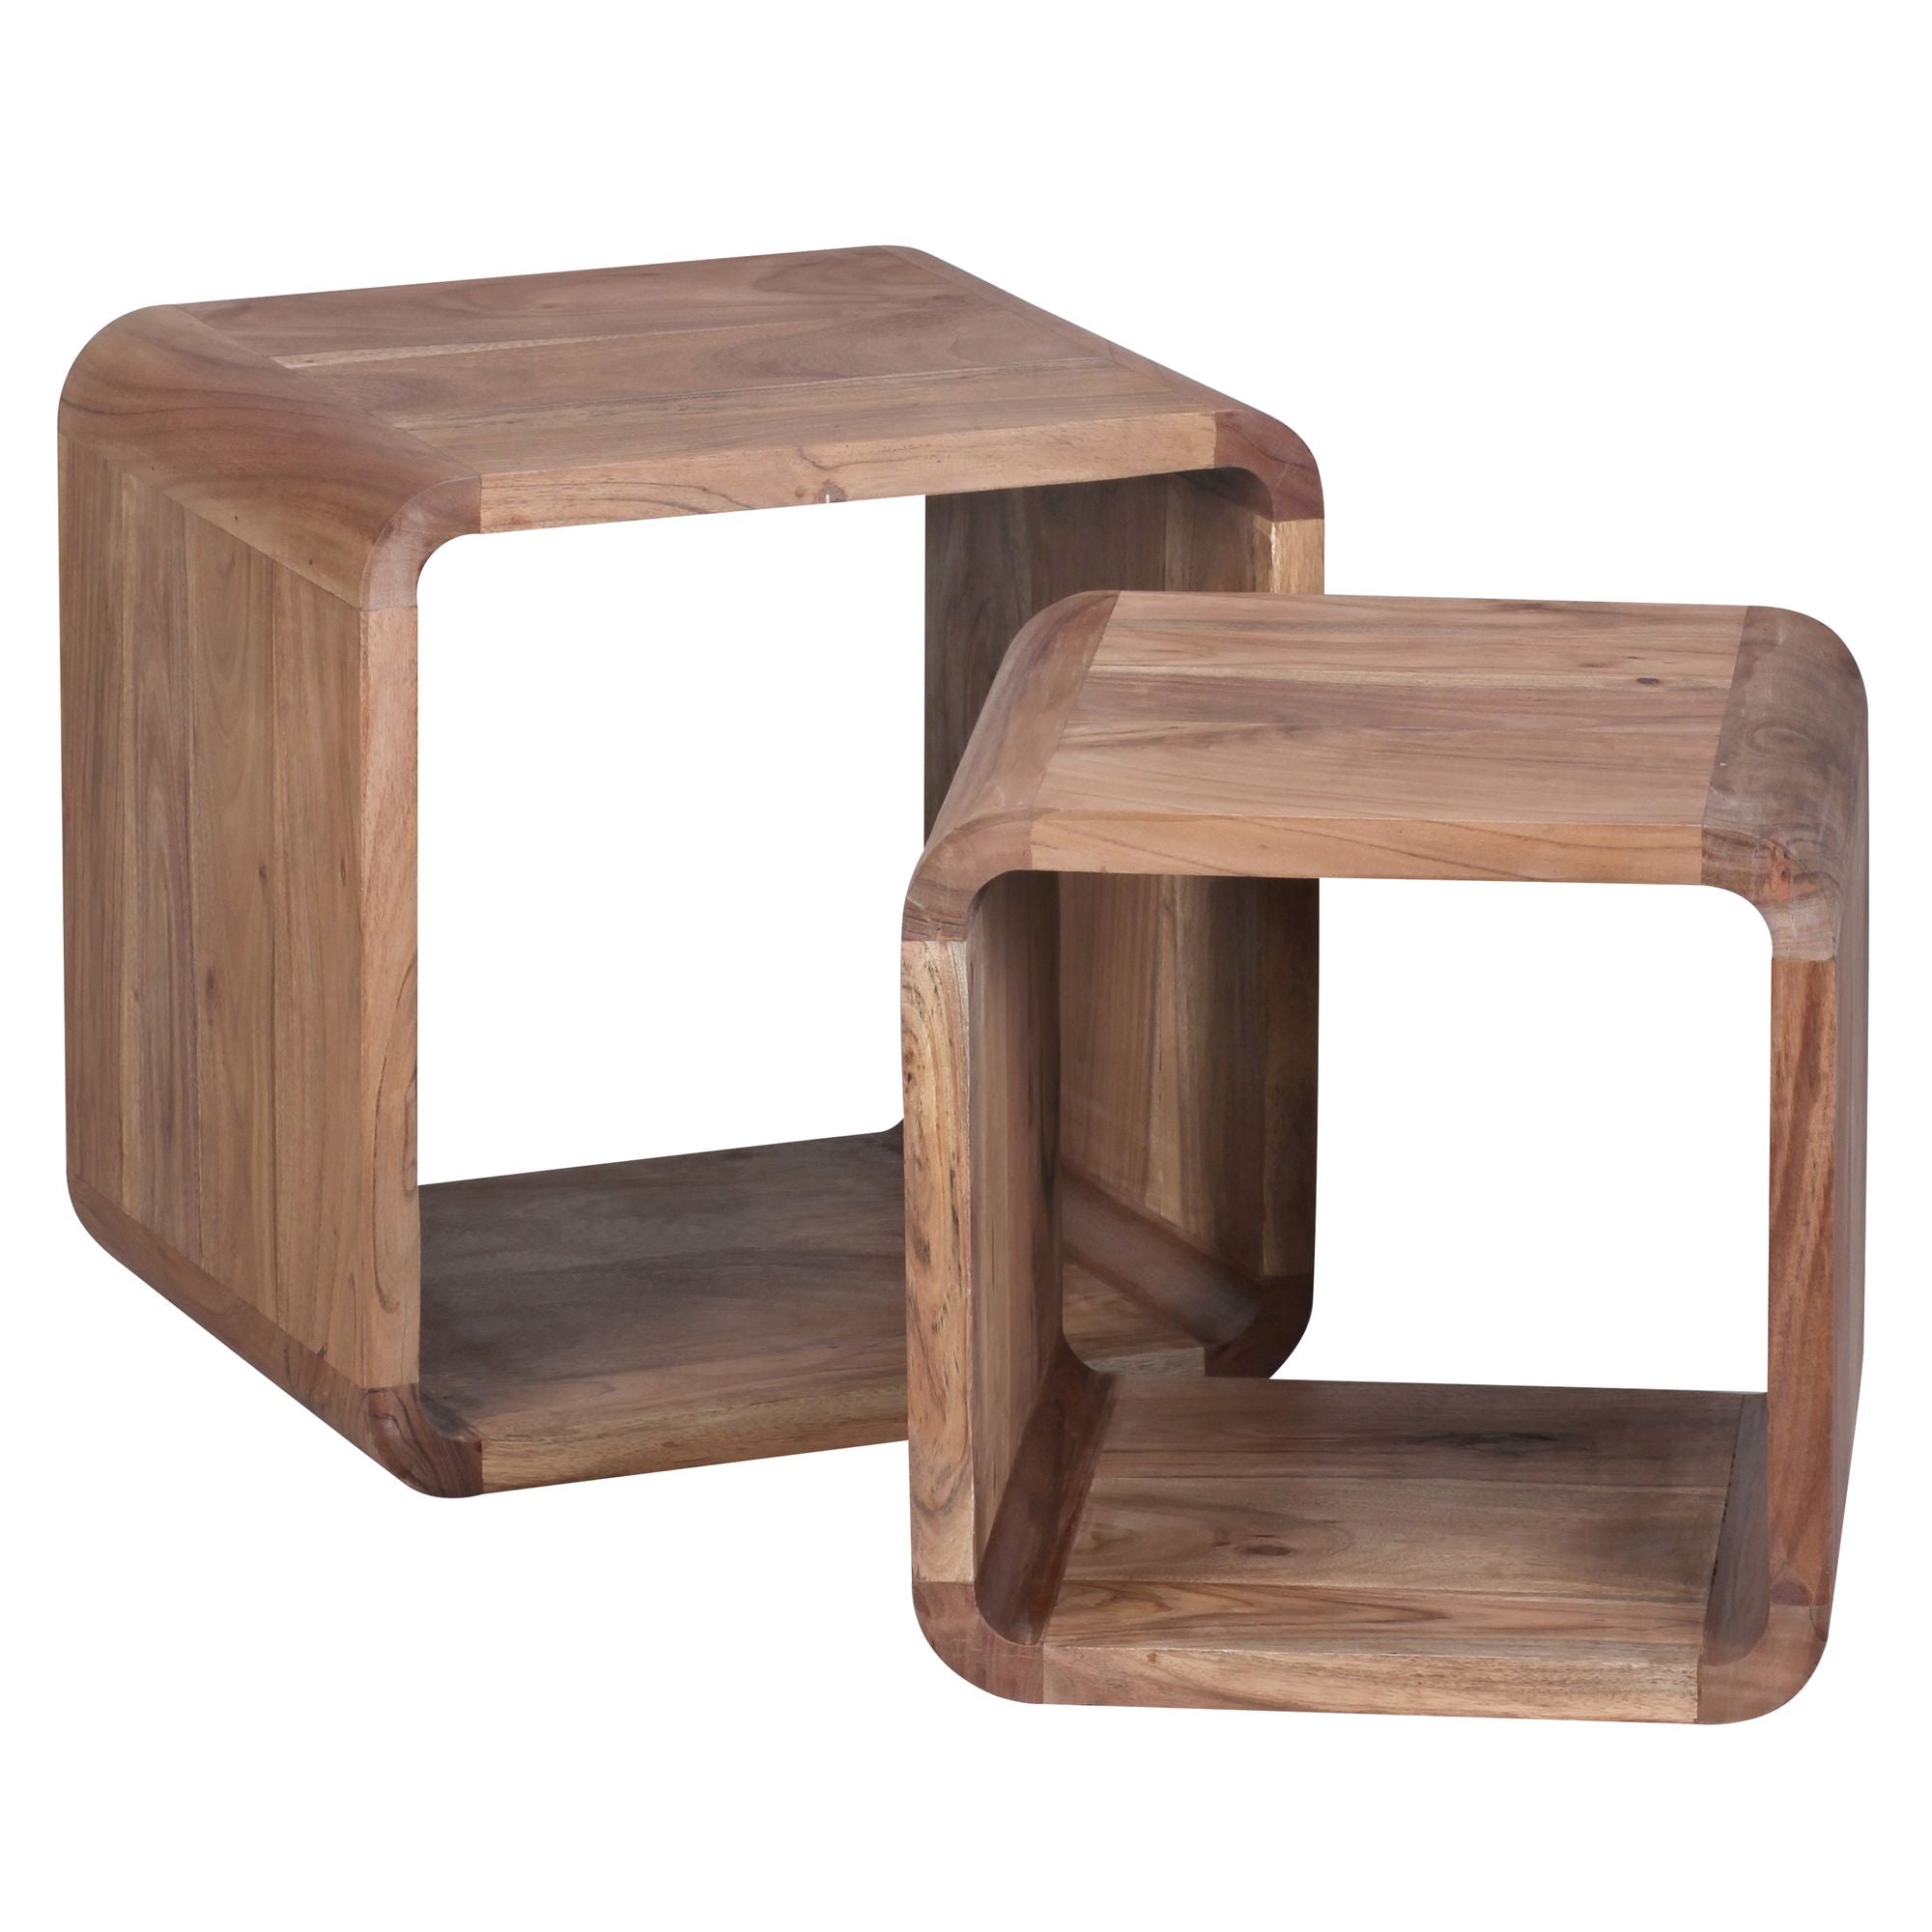 Tables d'appoint Wixom de Nancy - Lot de 2 - Tables de chevet - Cube - Espace de rangement ouvert - Bois massif - Acacia - Marron